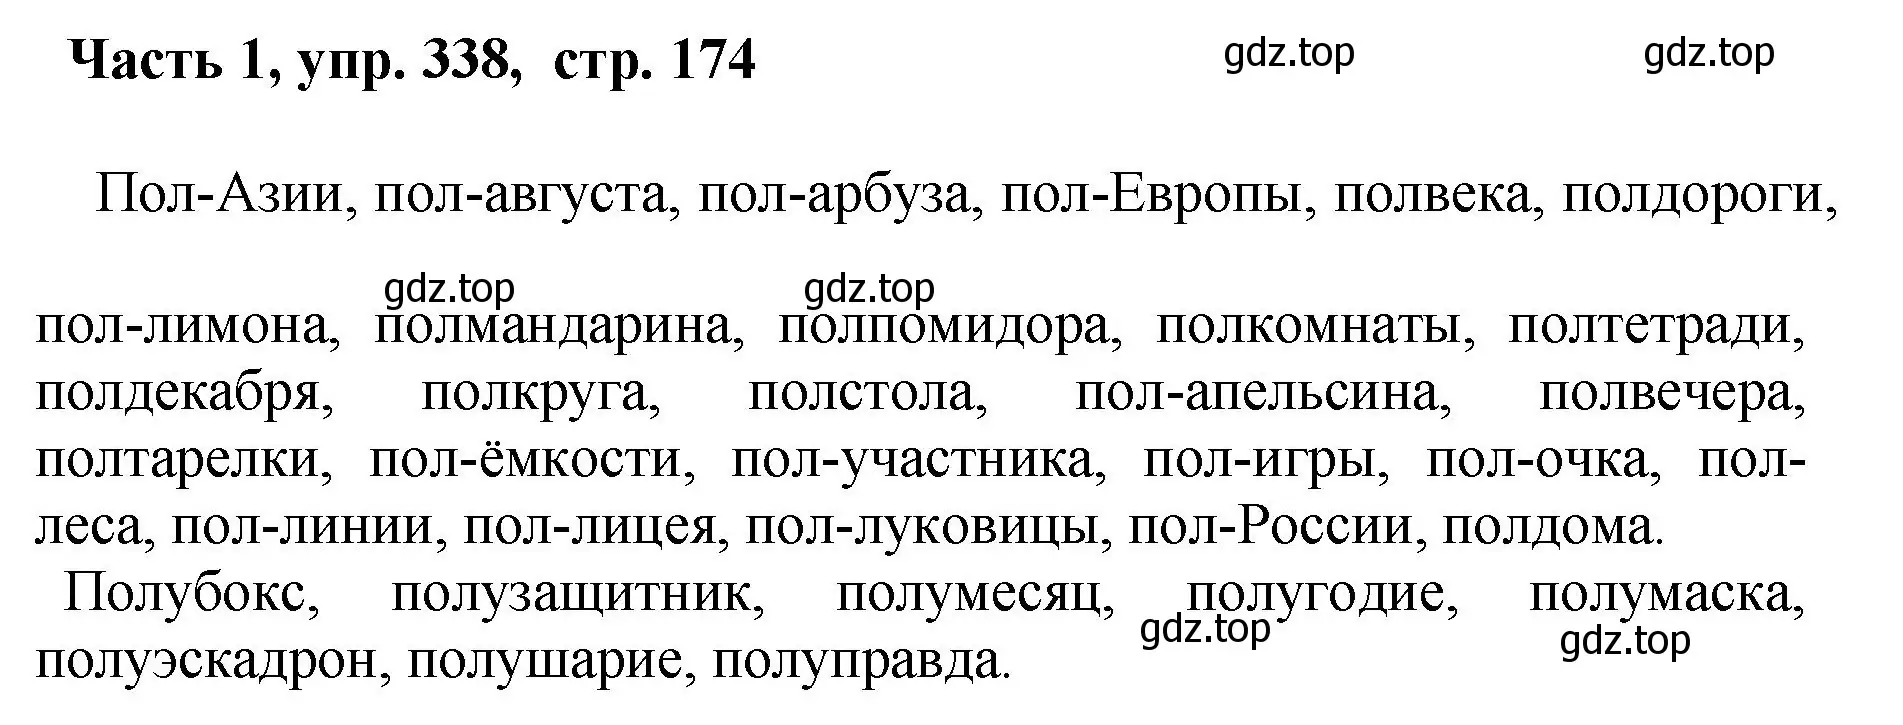 Решение номер 338 (страница 174) гдз по русскому языку 6 класс Баранов, Ладыженская, учебник 1 часть